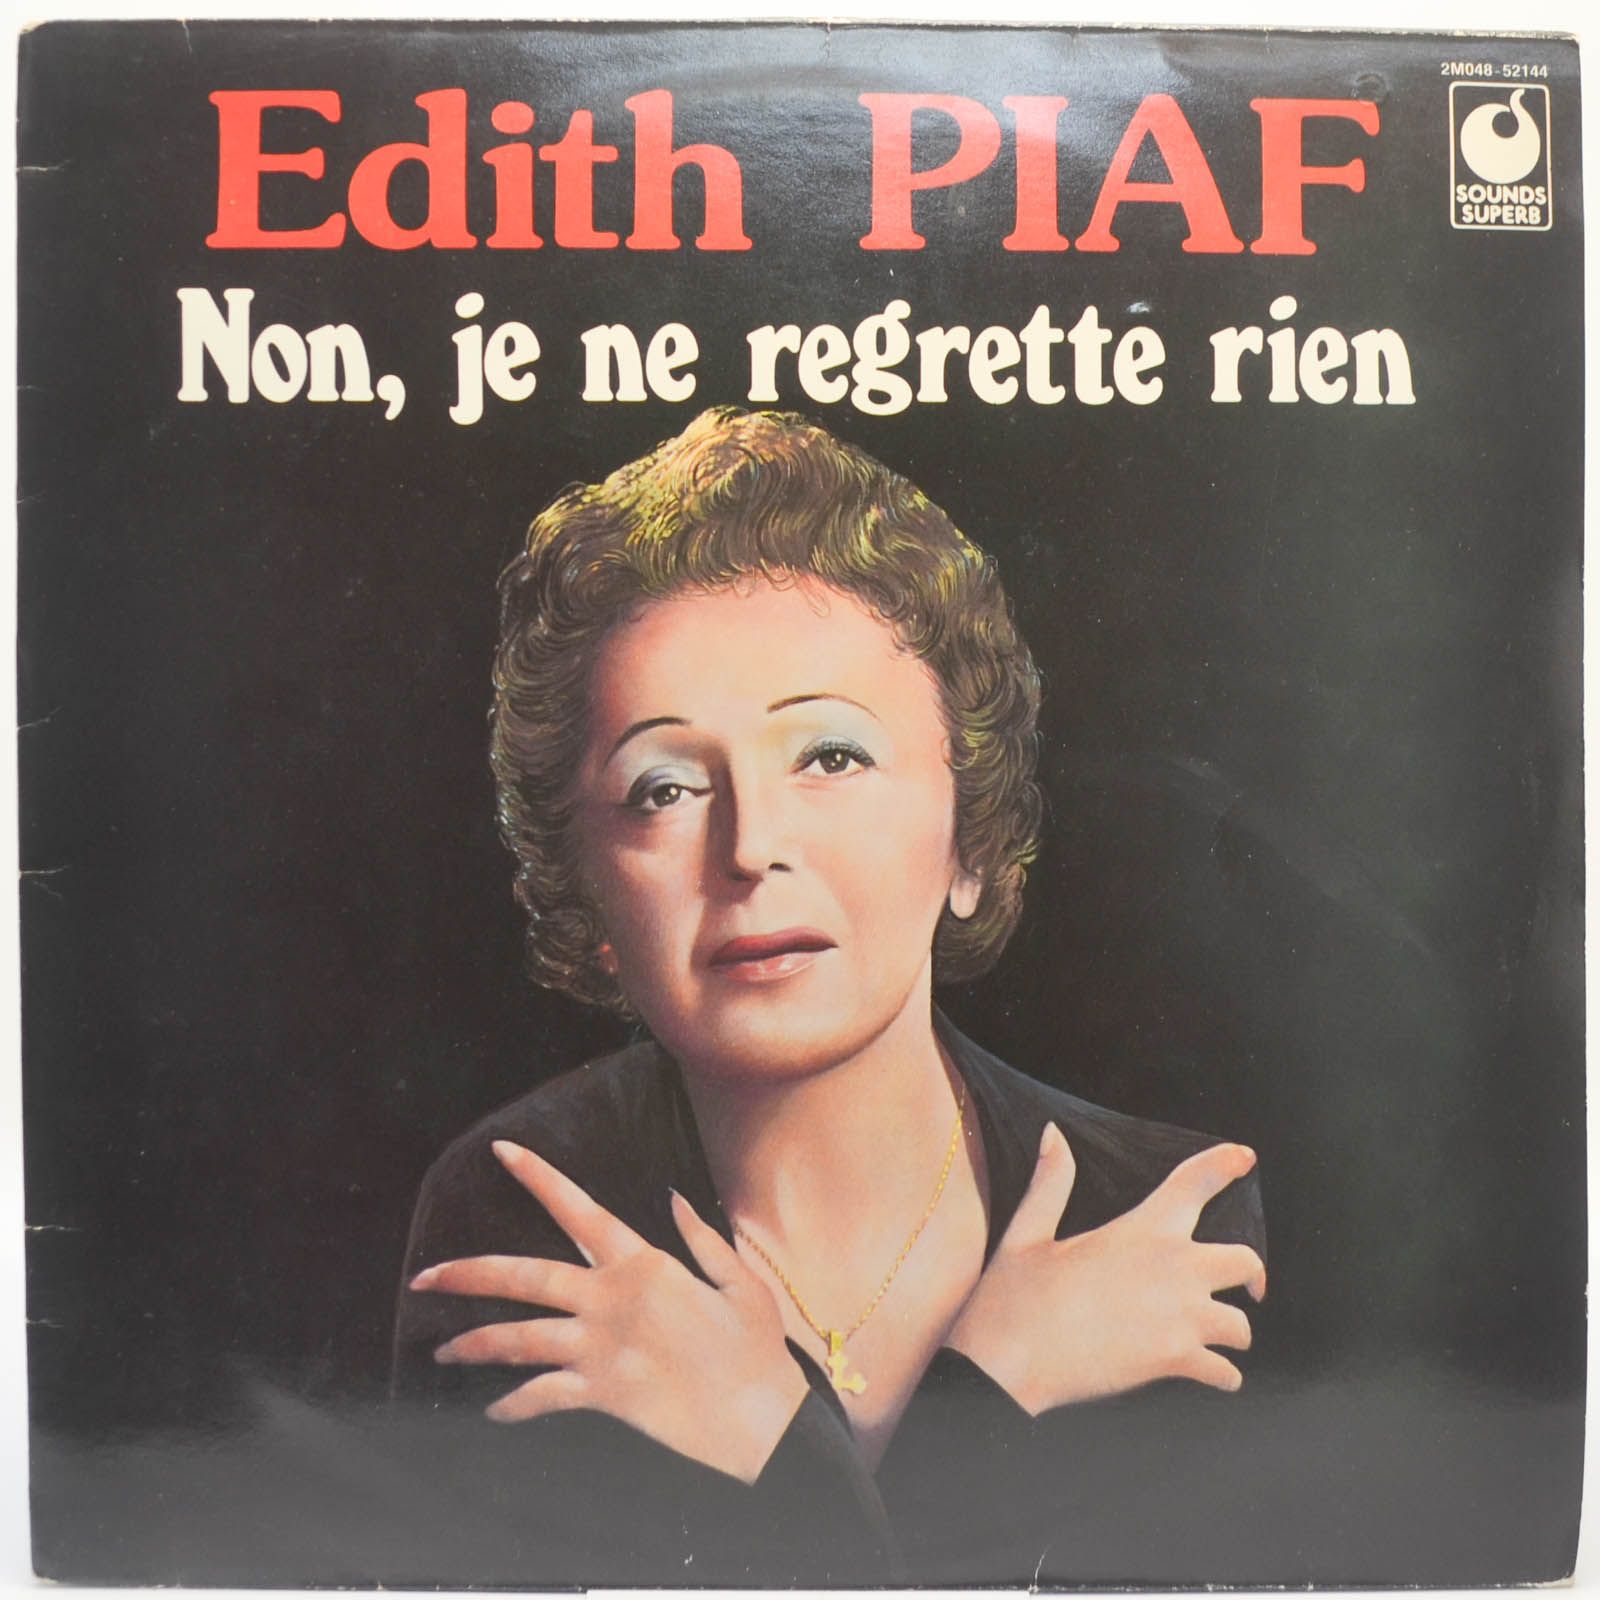 Edith Piaf — Non, Je Ne Regrette Rien, 1974